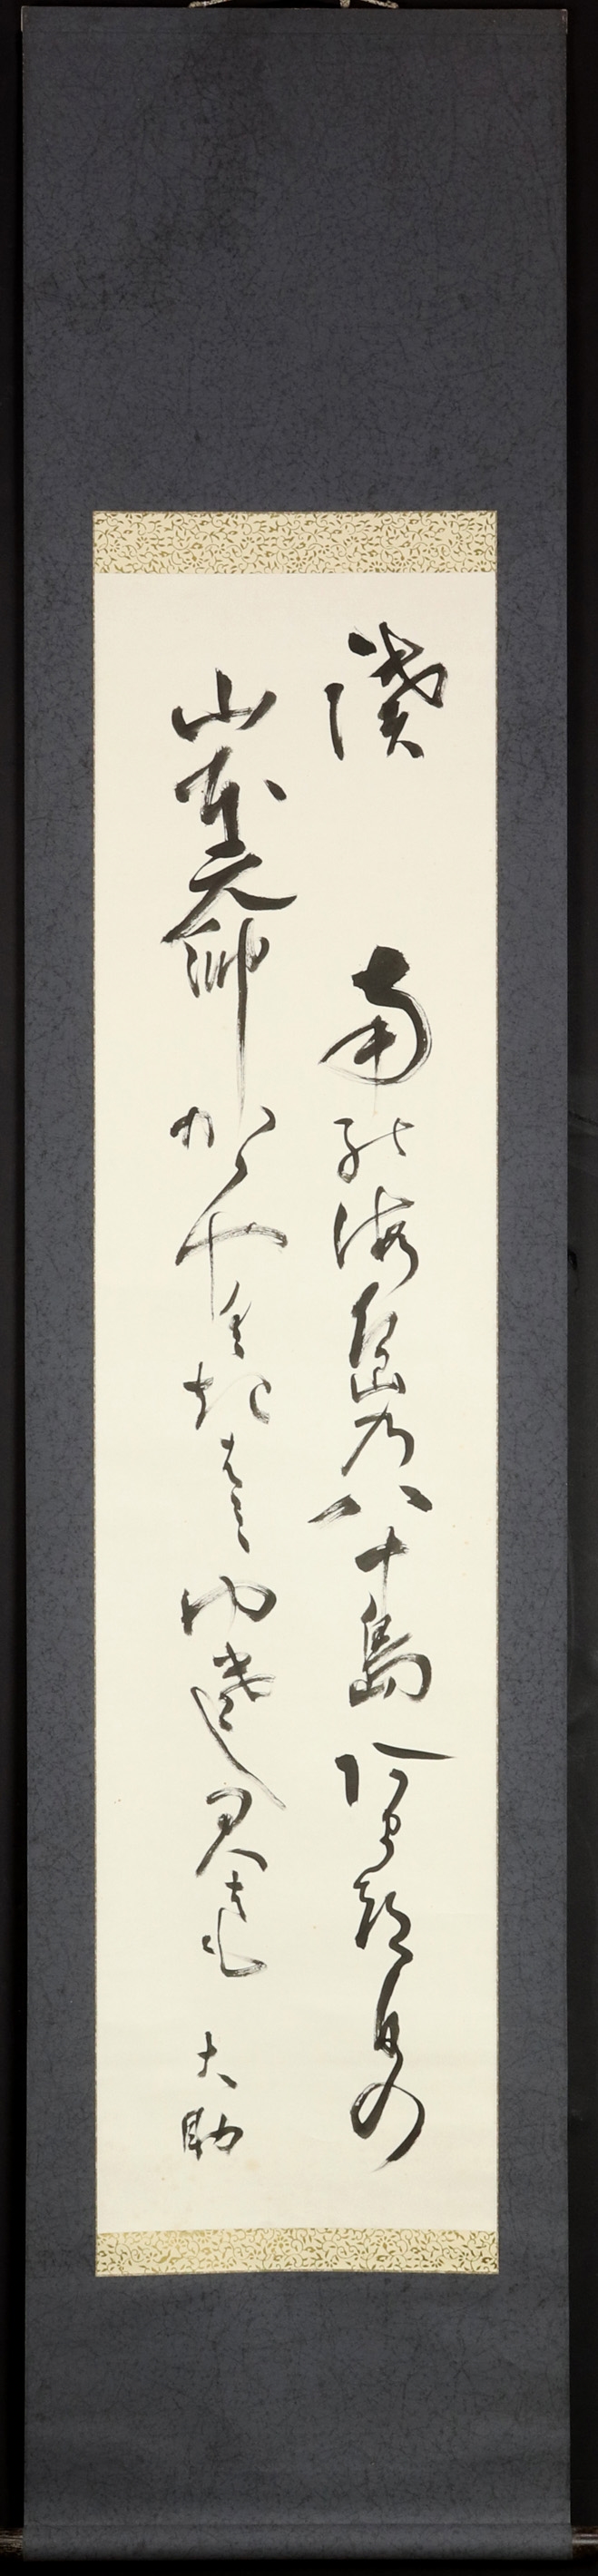 Yamamoto Isoroku, Calligraphy